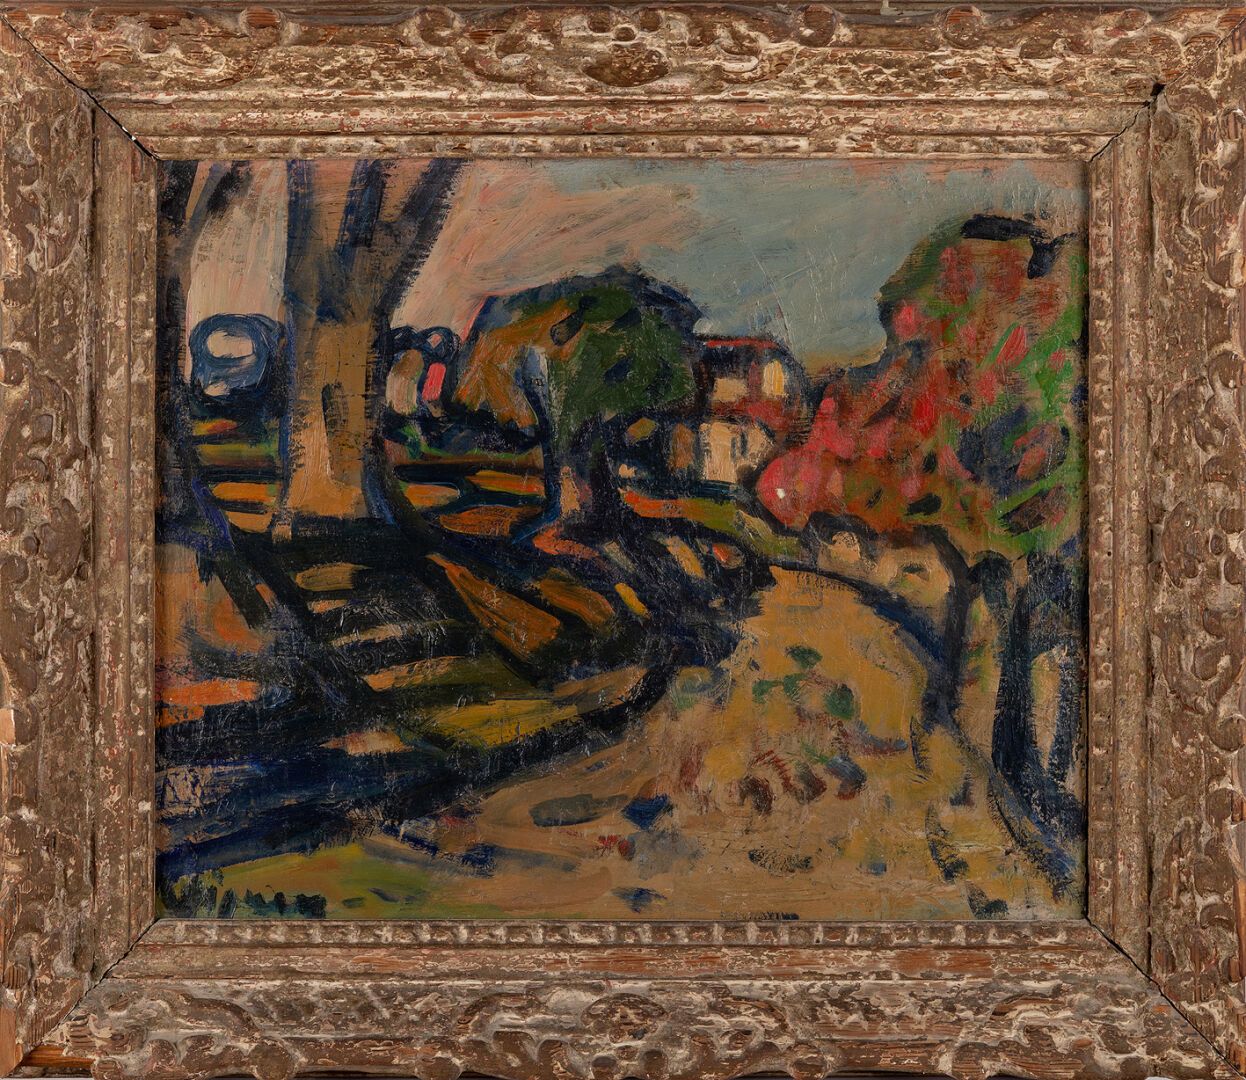 Null 西尔万-维尼 (1903-1970)

通往村庄的道路

布面油画。

左下方有签名。

38 x 46 厘米